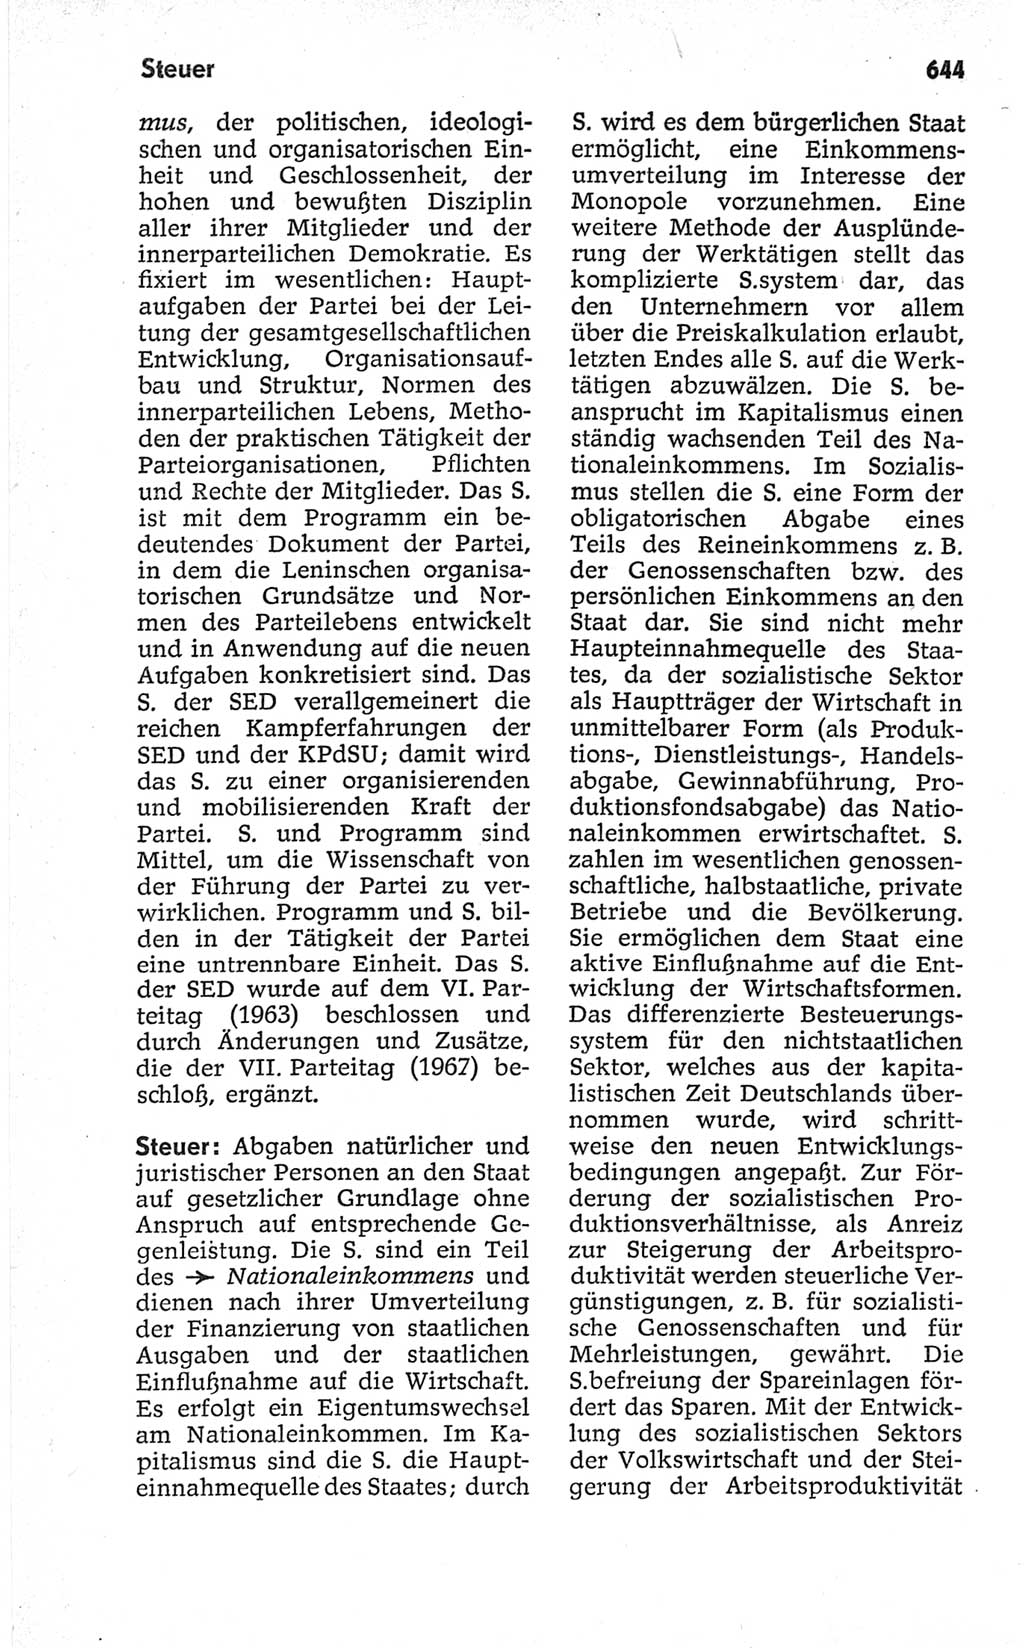 Kleines politisches Wörterbuch [Deutsche Demokratische Republik (DDR)] 1967, Seite 644 (Kl. pol. Wb. DDR 1967, S. 644)